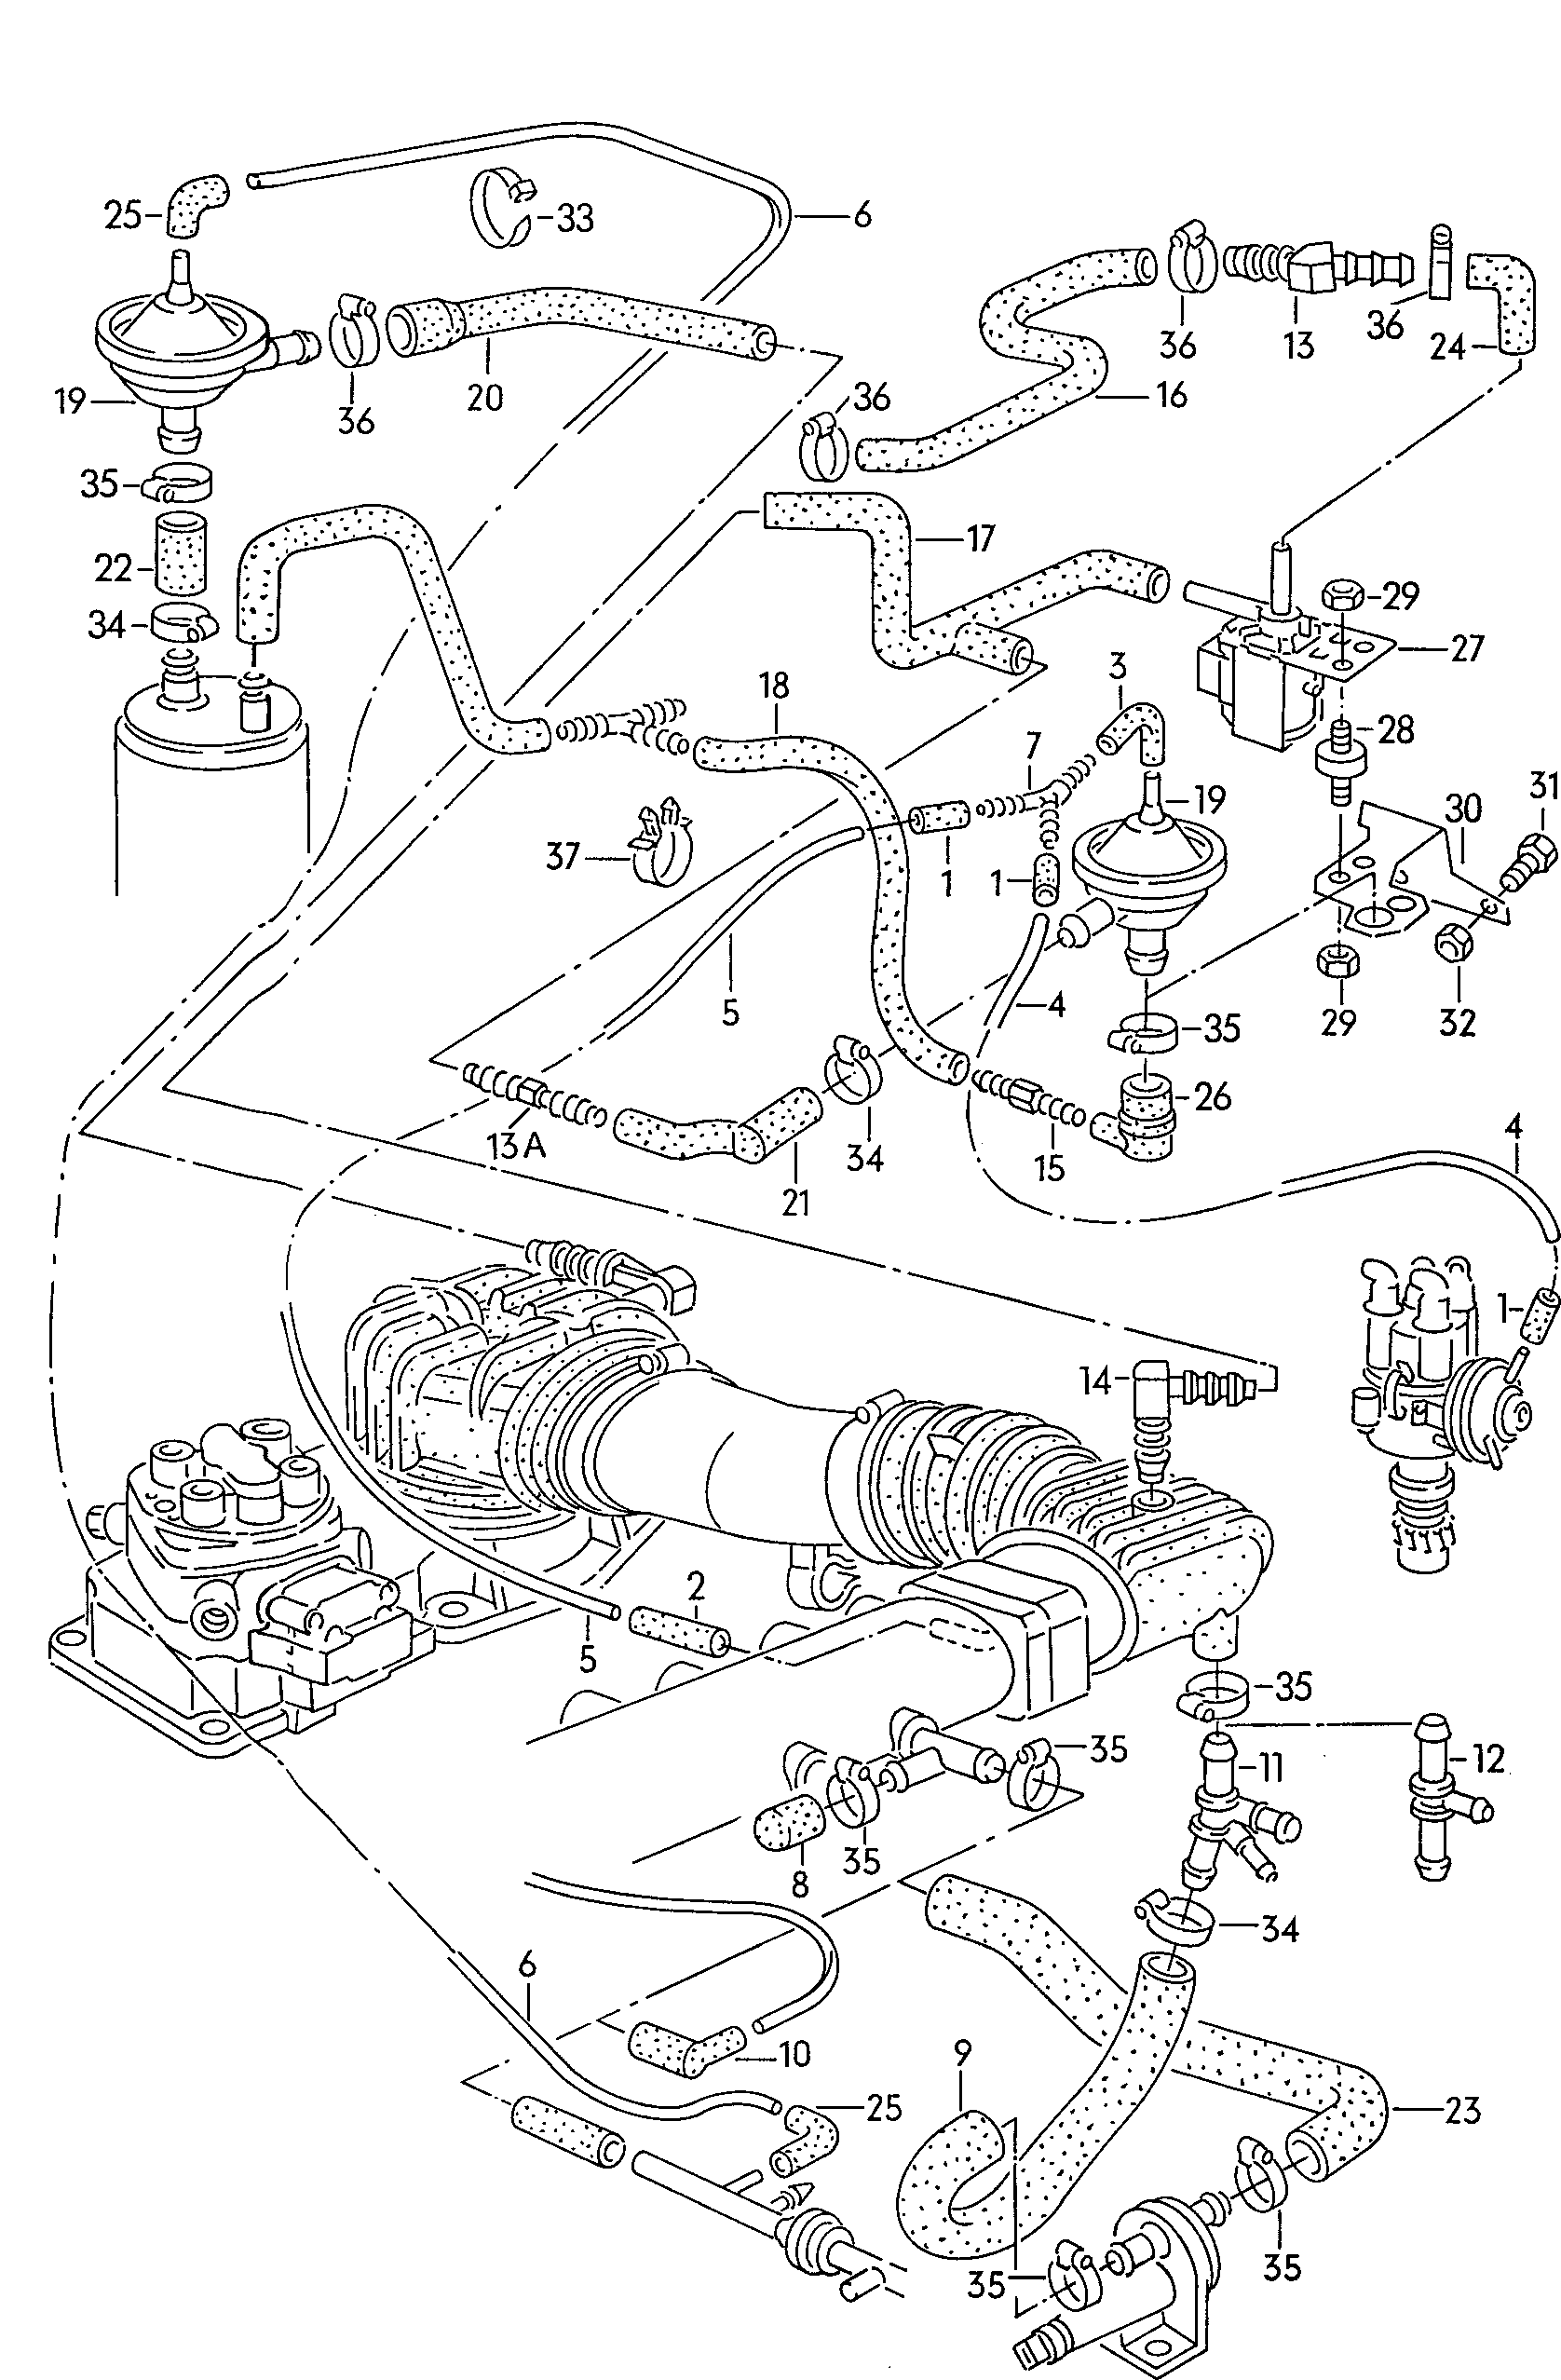 UnterdruckanlageAktivkohlefilteranlage 1,8Ltr. - Audi 100/Avant - a100